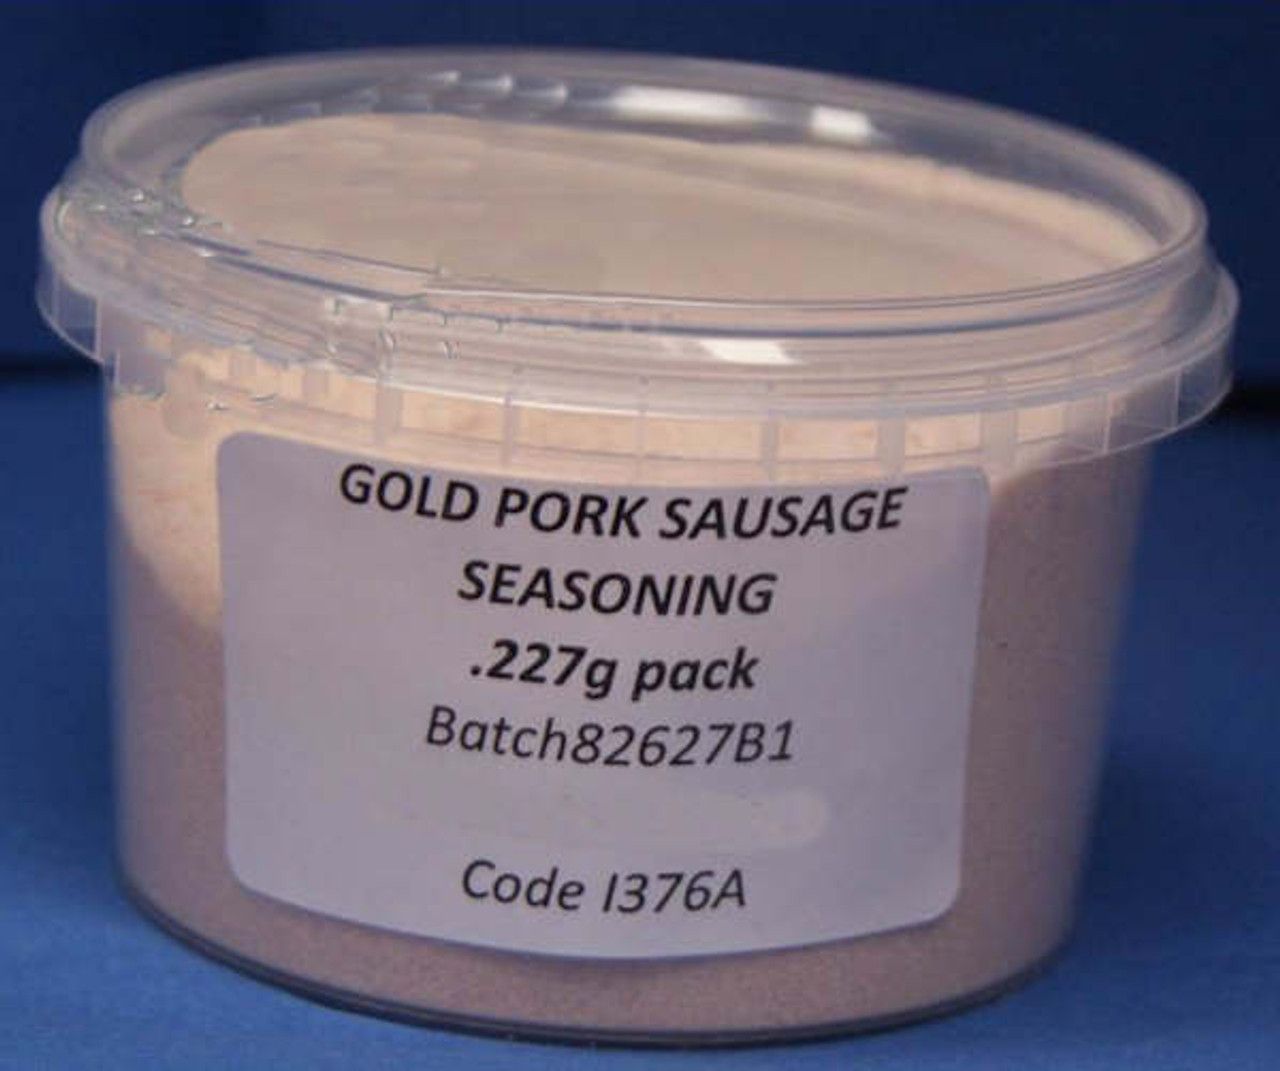 Tub -.227g  Gold Pork sausage seasoning